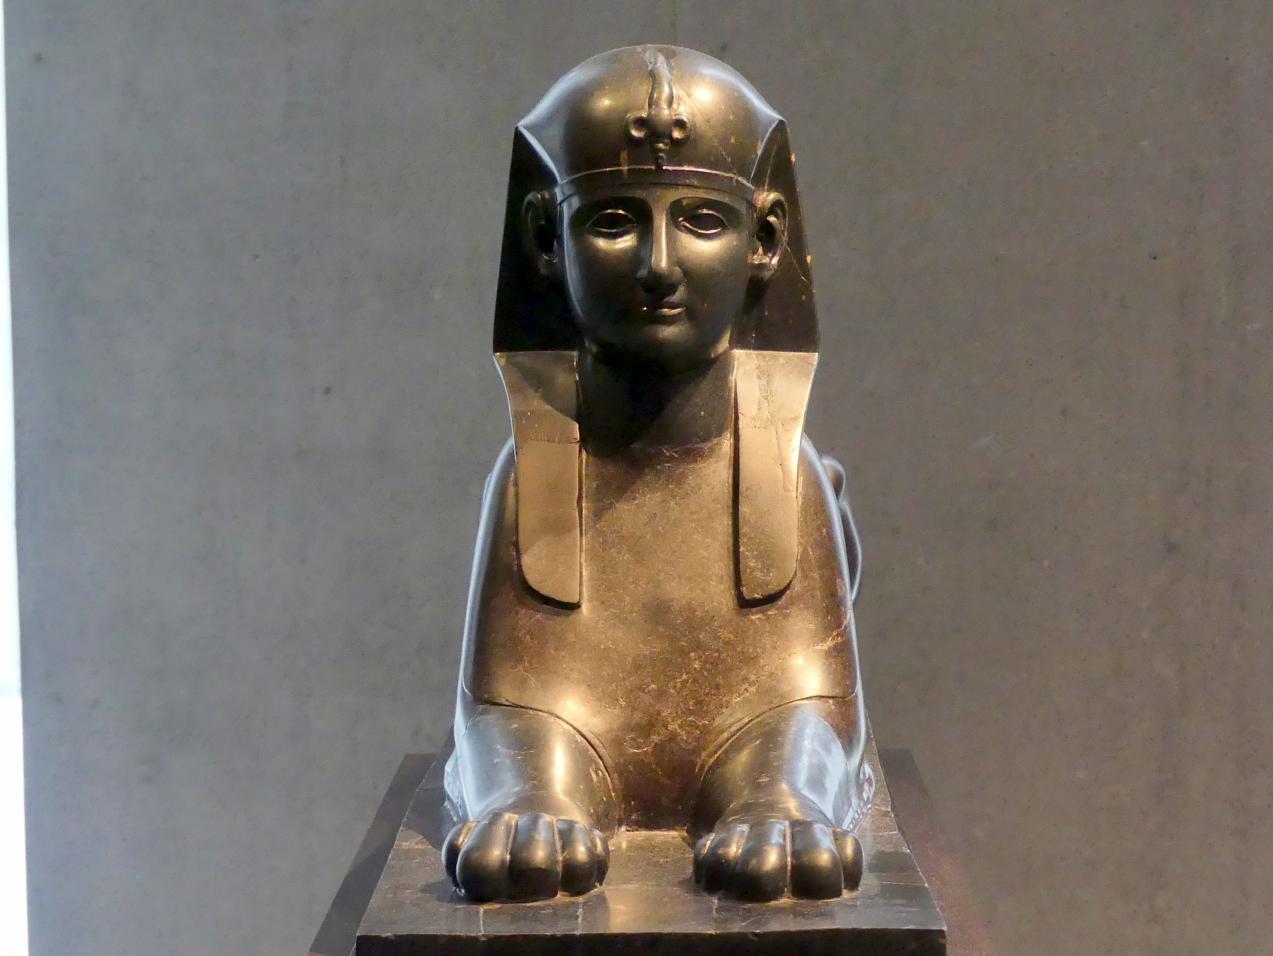 Sphinxfigur, Römische Kaiserzeit, 27 v. Chr. - 54 n. Chr., 1 - 100